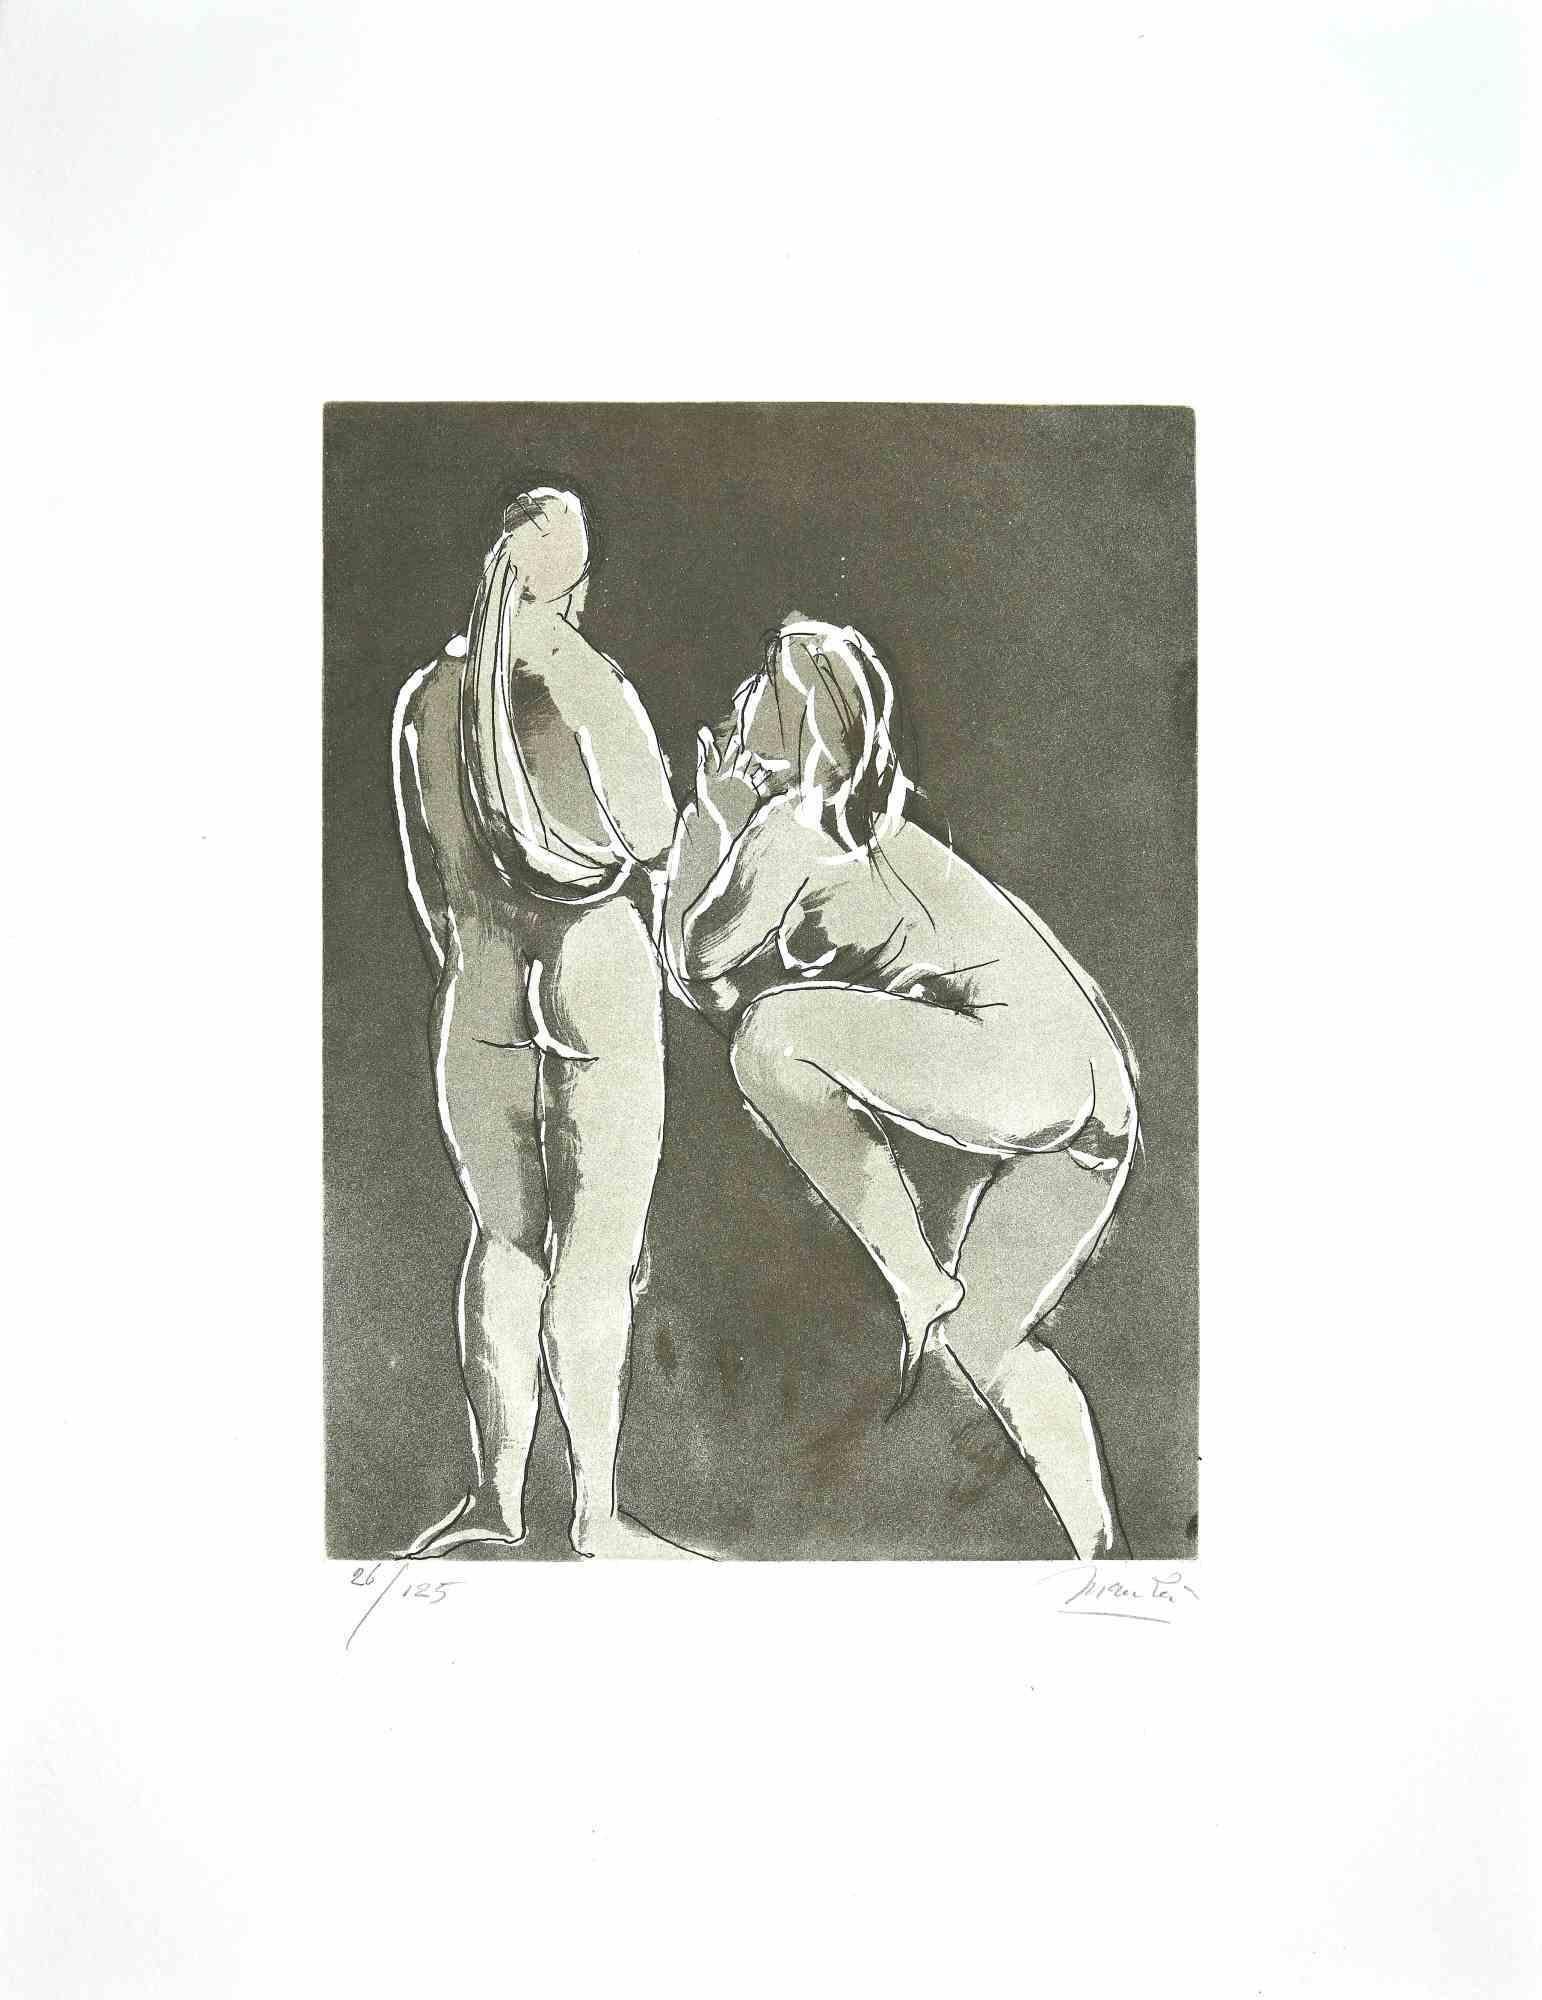 Portrait Print Giacomo Manzú - Danseurs - Gravure de Giacomo Manzù - 1970